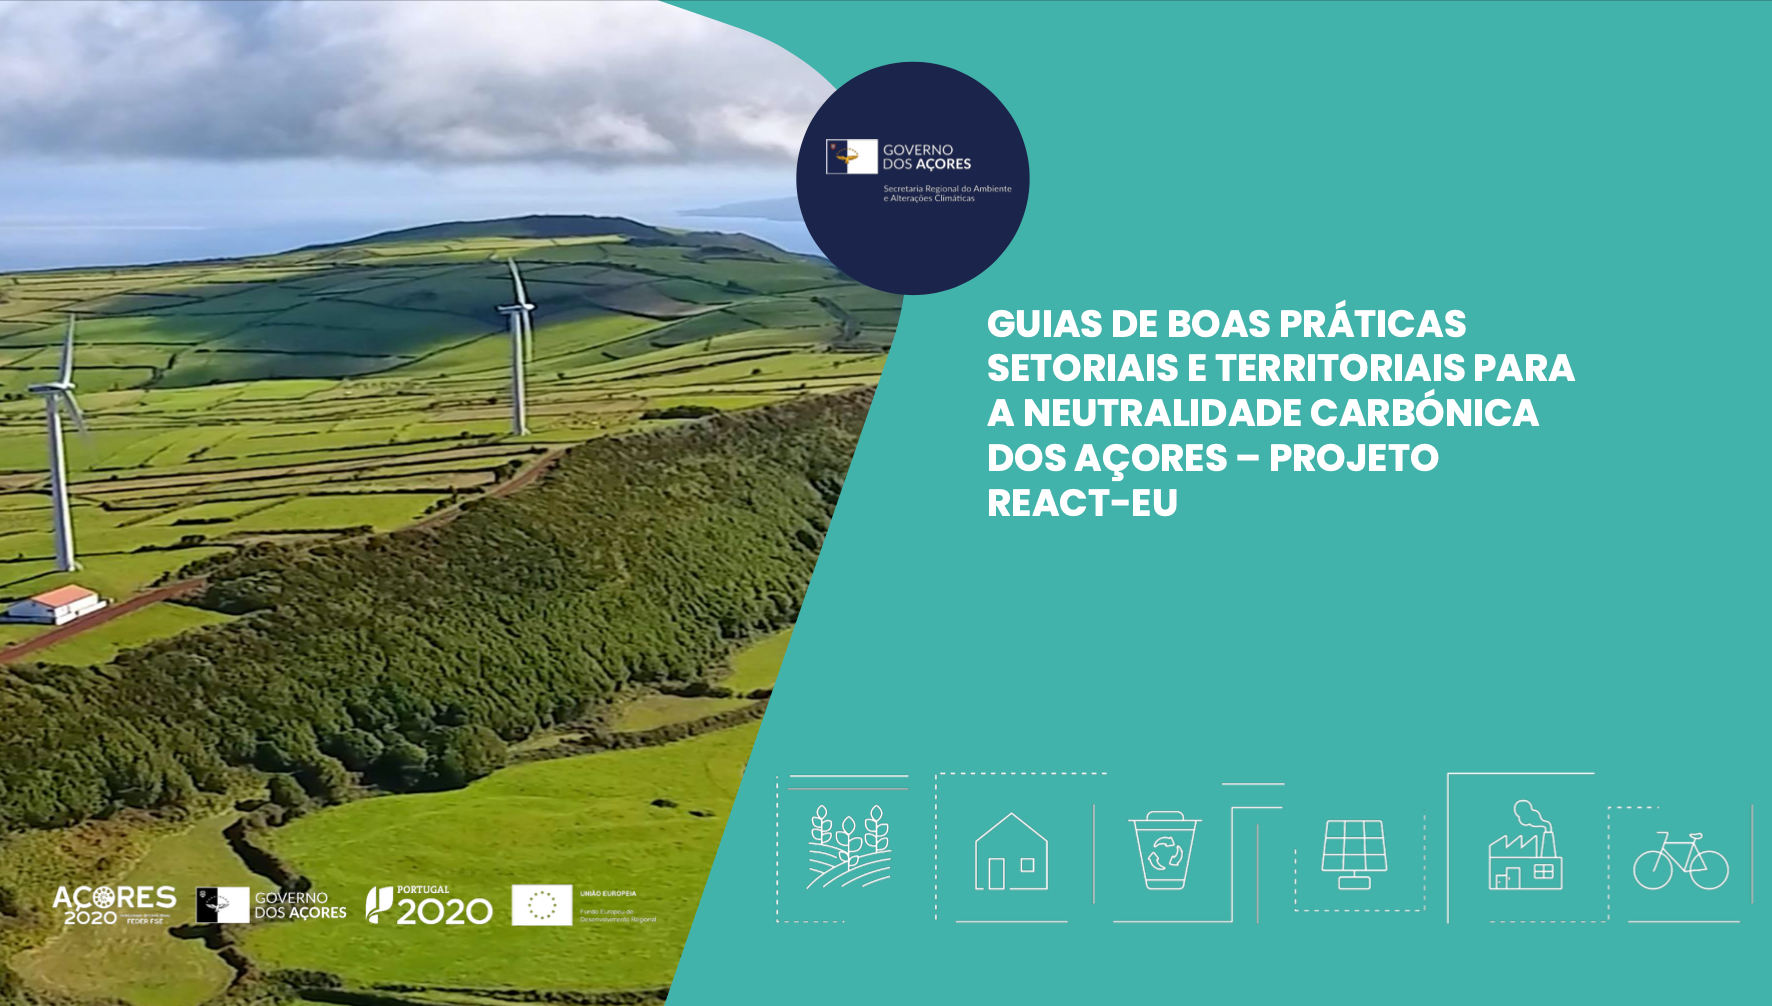 Guias de boas práticas sectoriais e territoriais para a neutralidade carbónica dos Açores